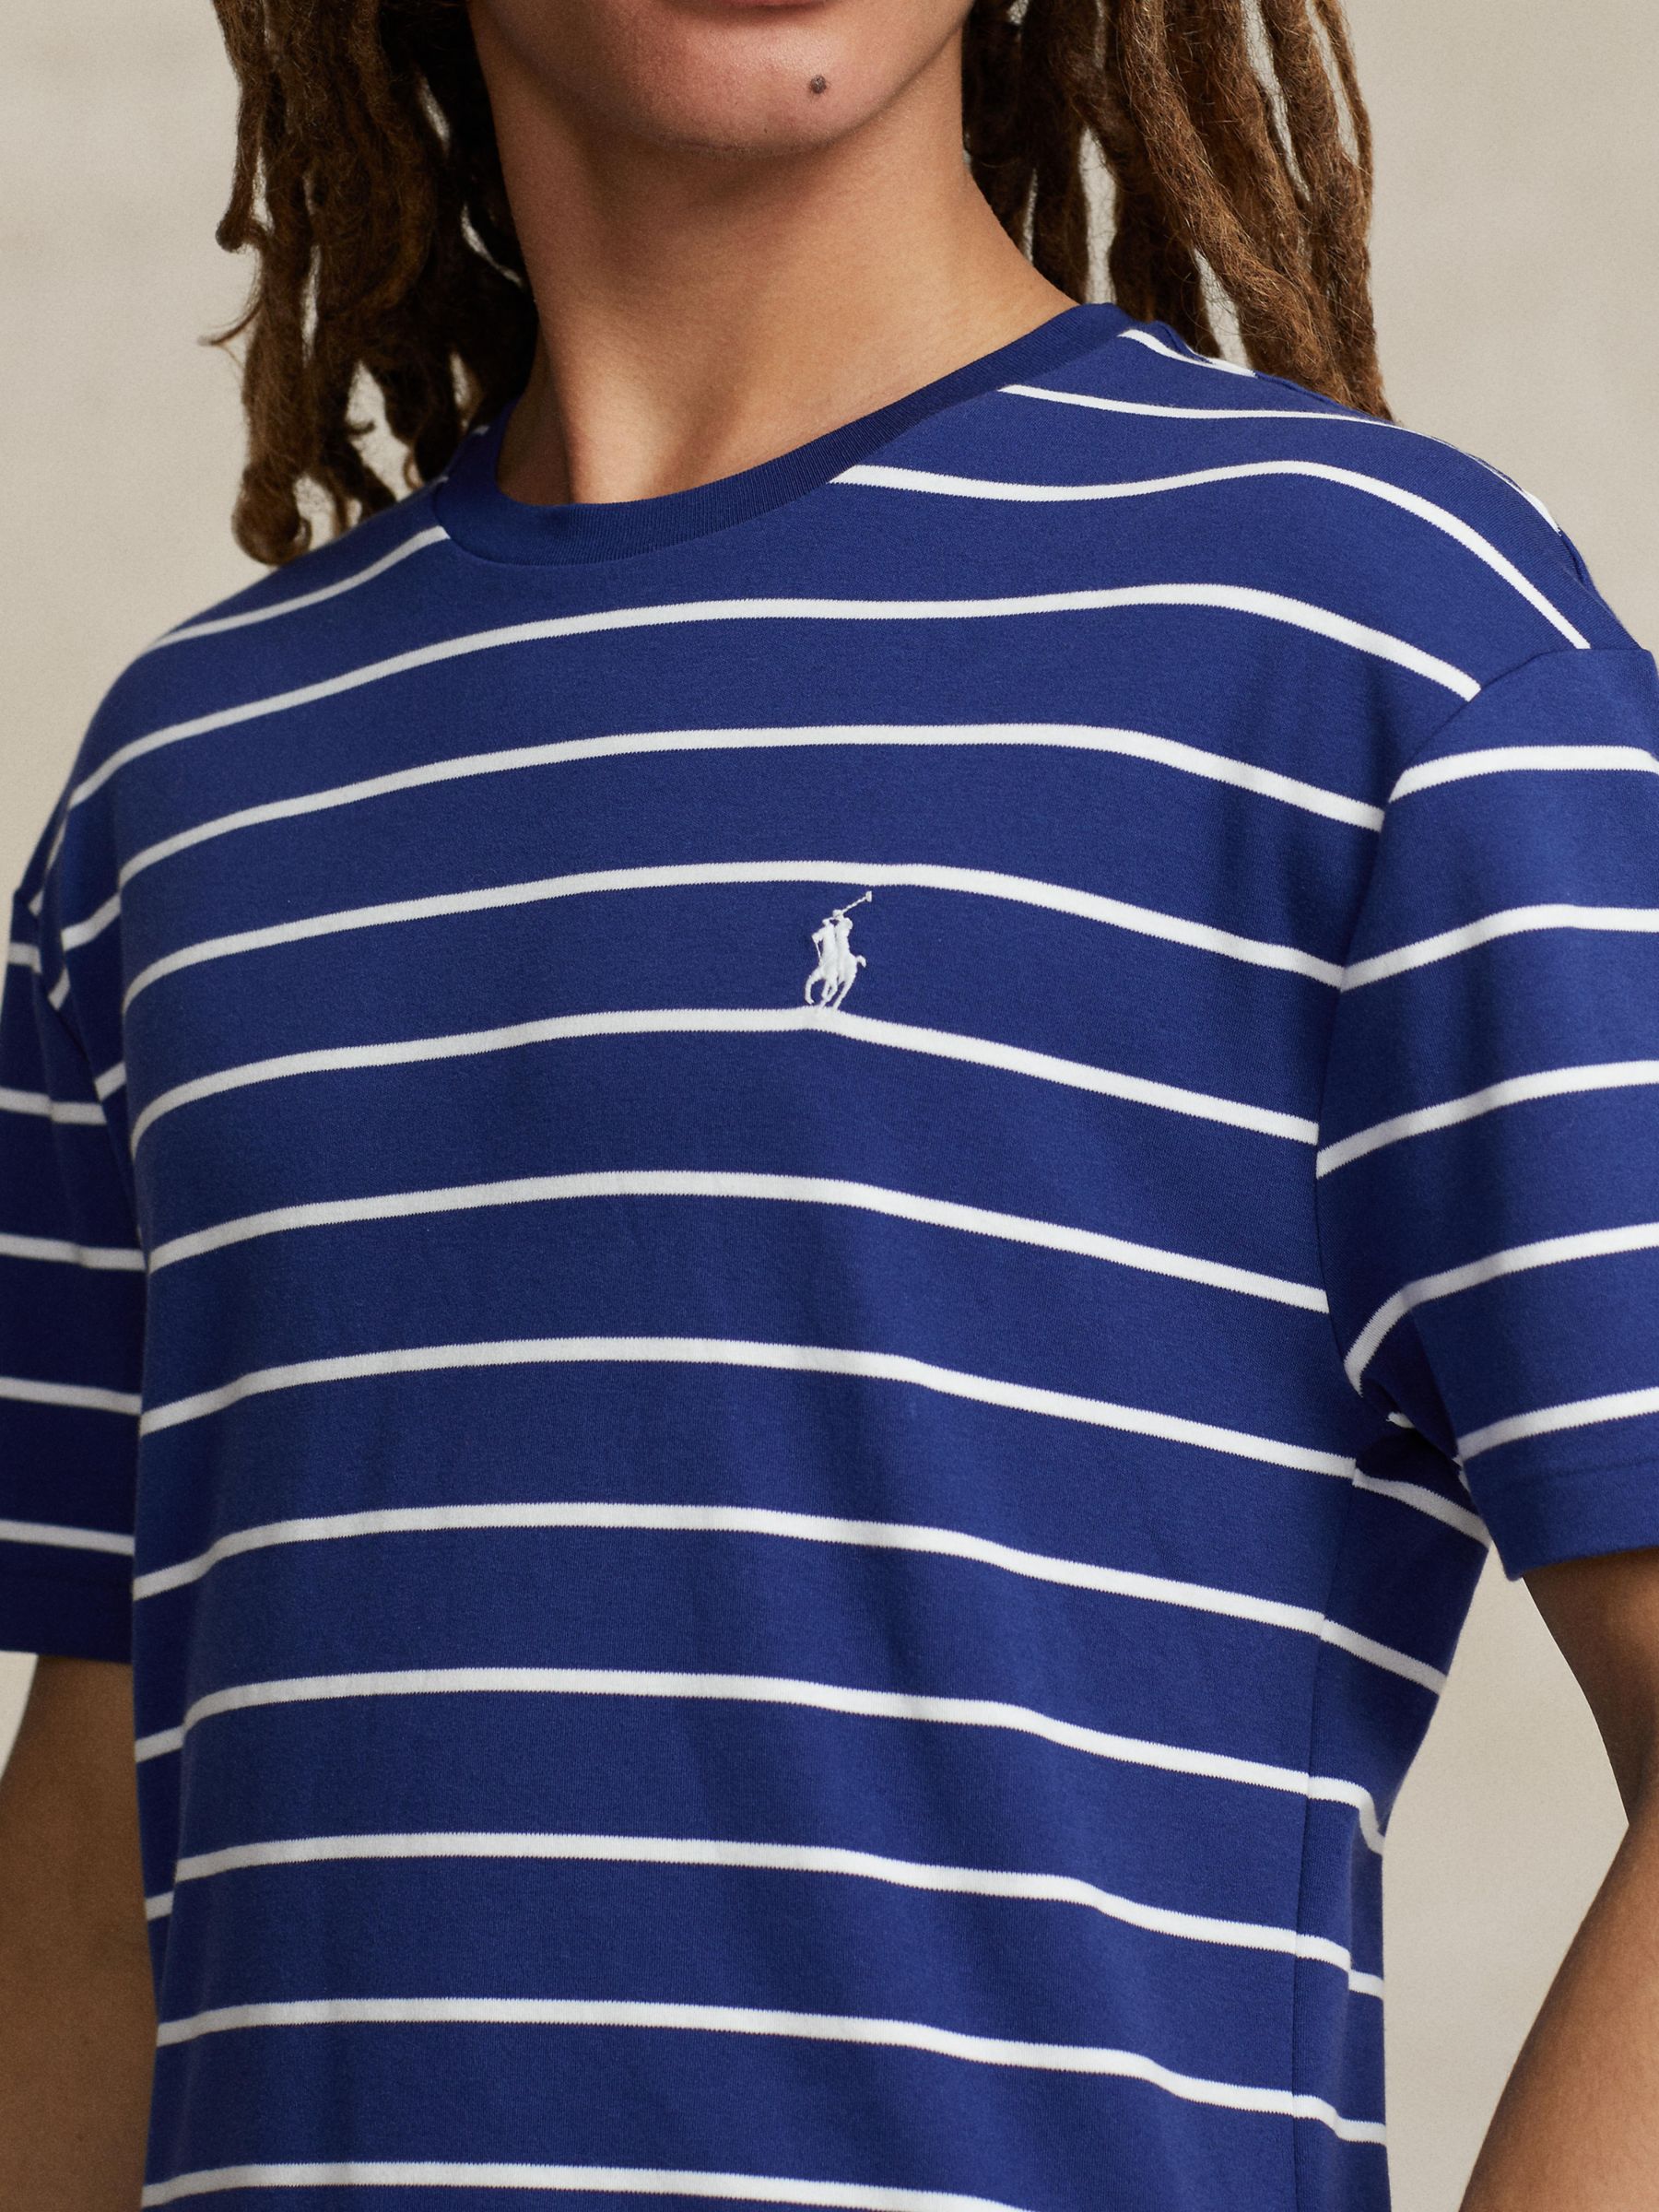 Polo Ralph Lauren Cotton Striped T-Shirt, Fall Royal/White, S